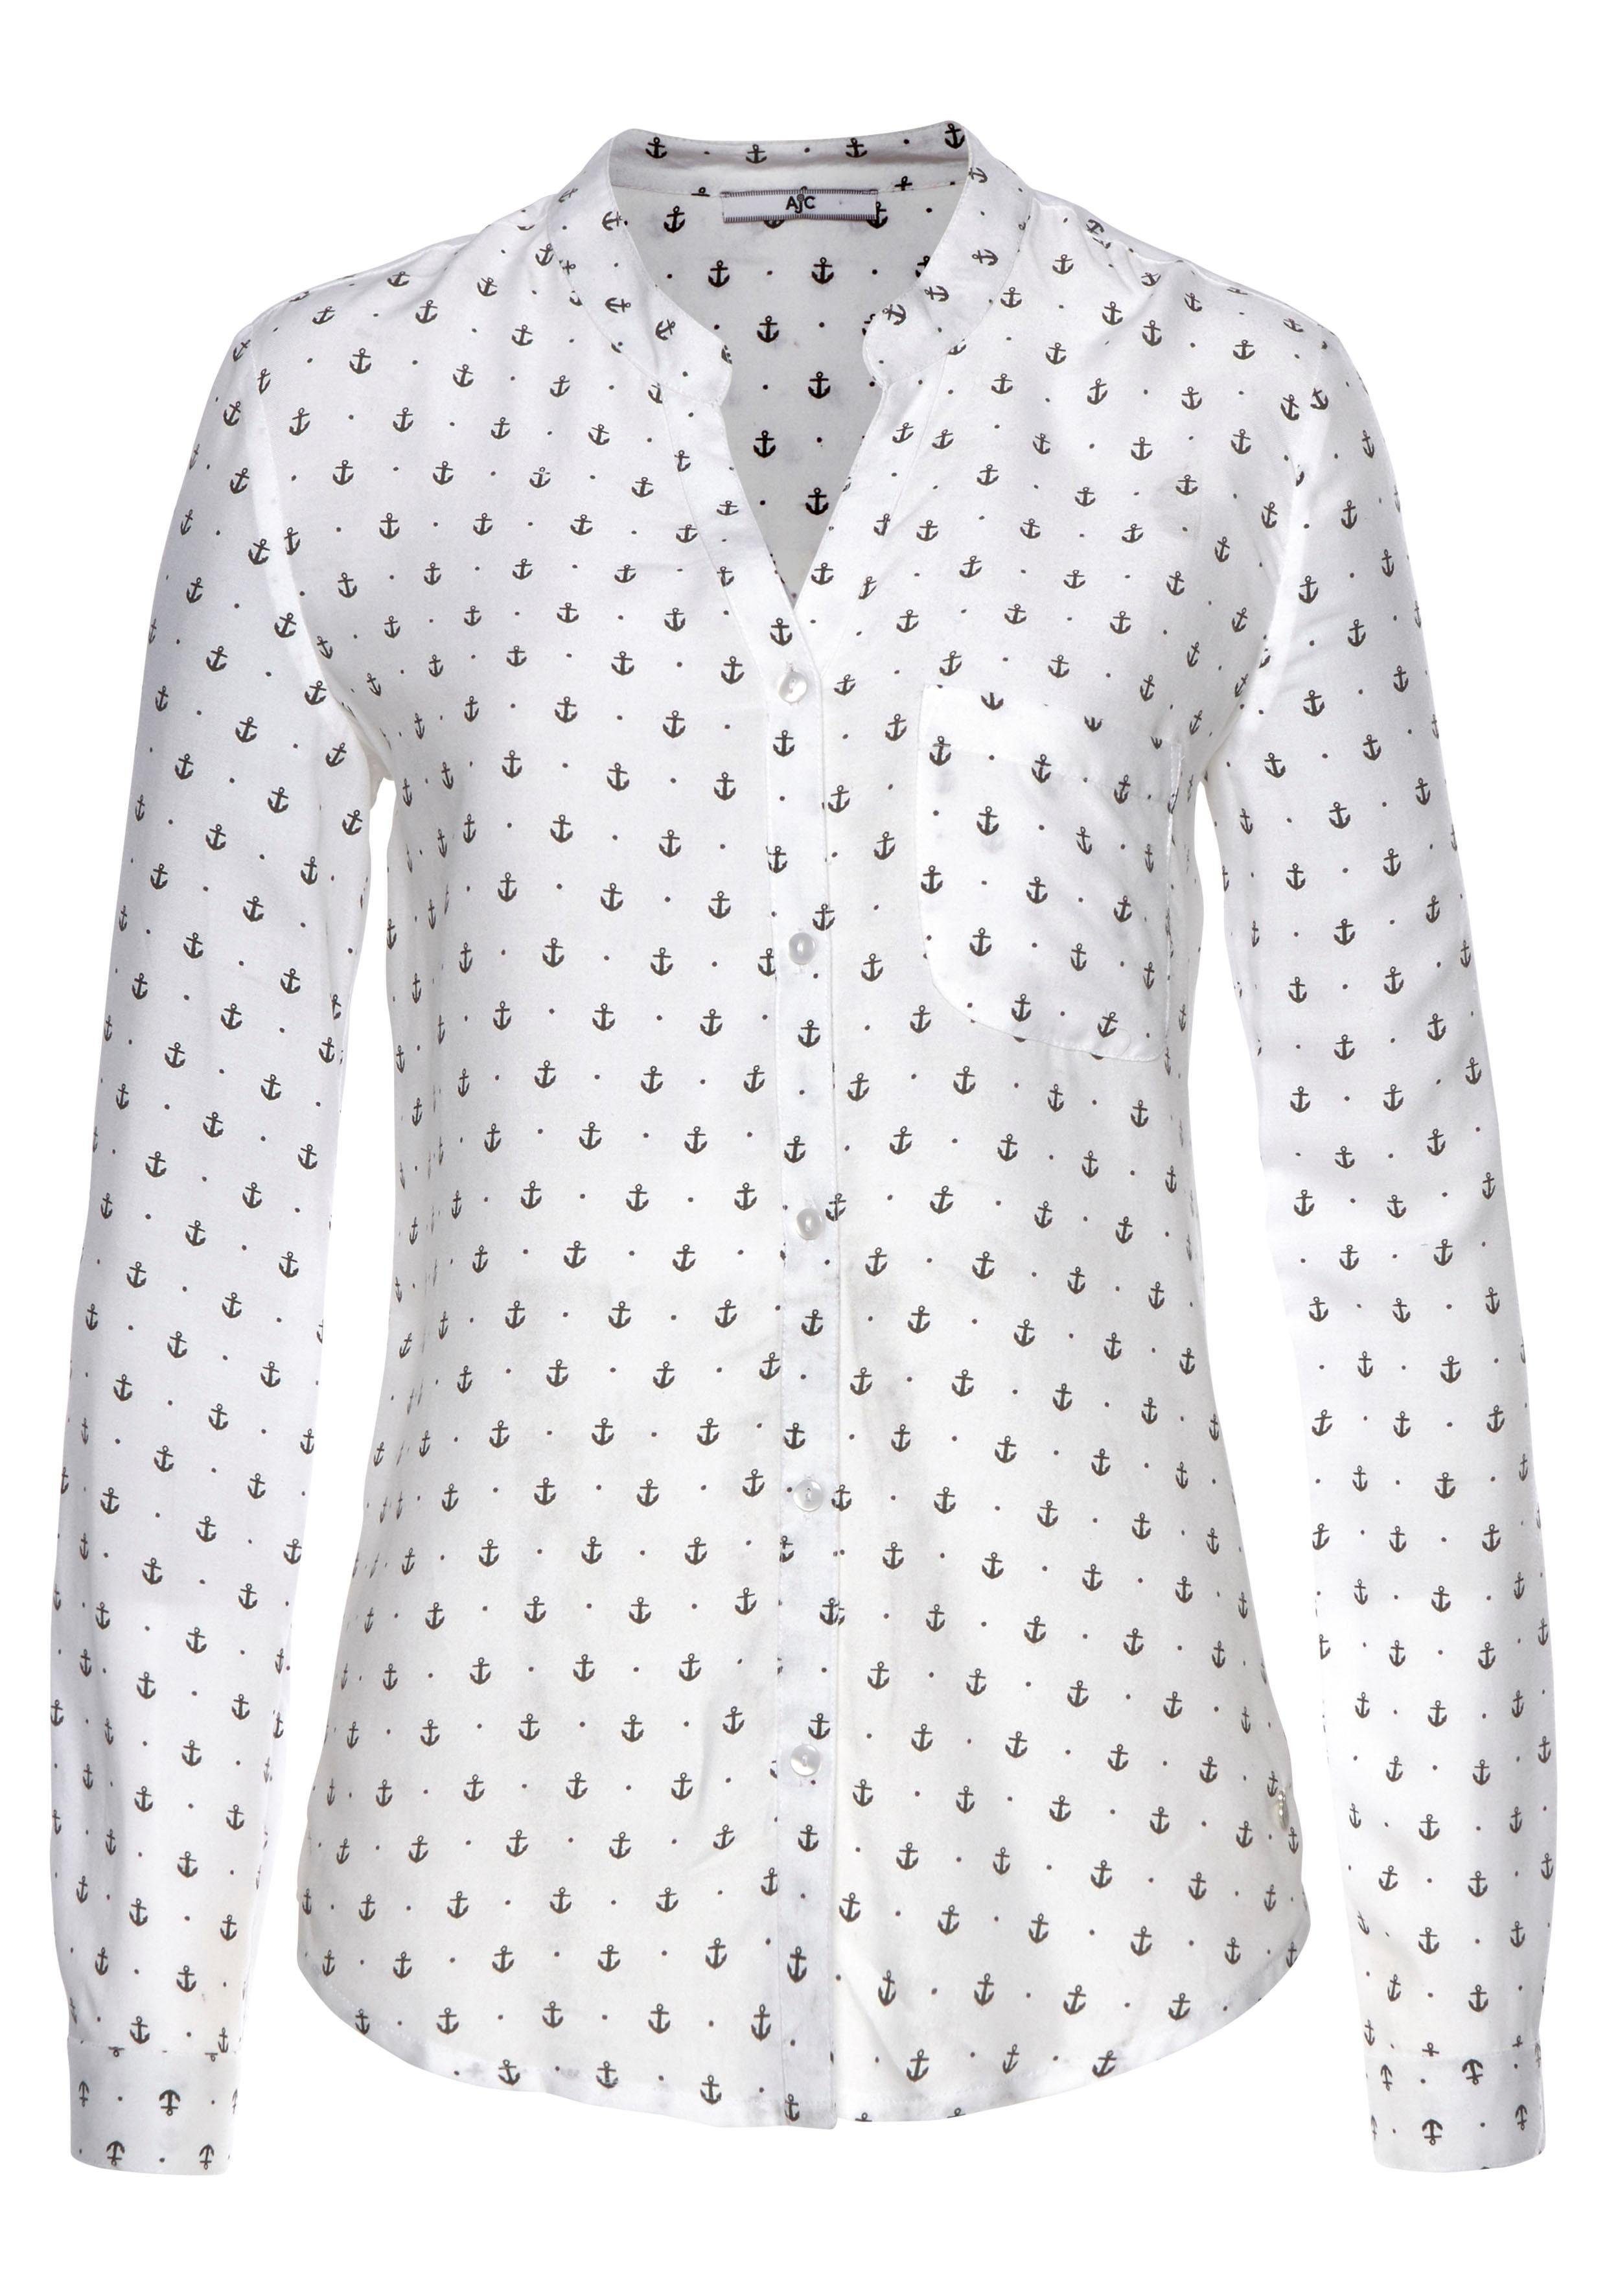 AJC Hemdbluse mit unterschiedlichen Druckvarianten Material) nachhaltigem oder (Bluse aus weiß Uni in